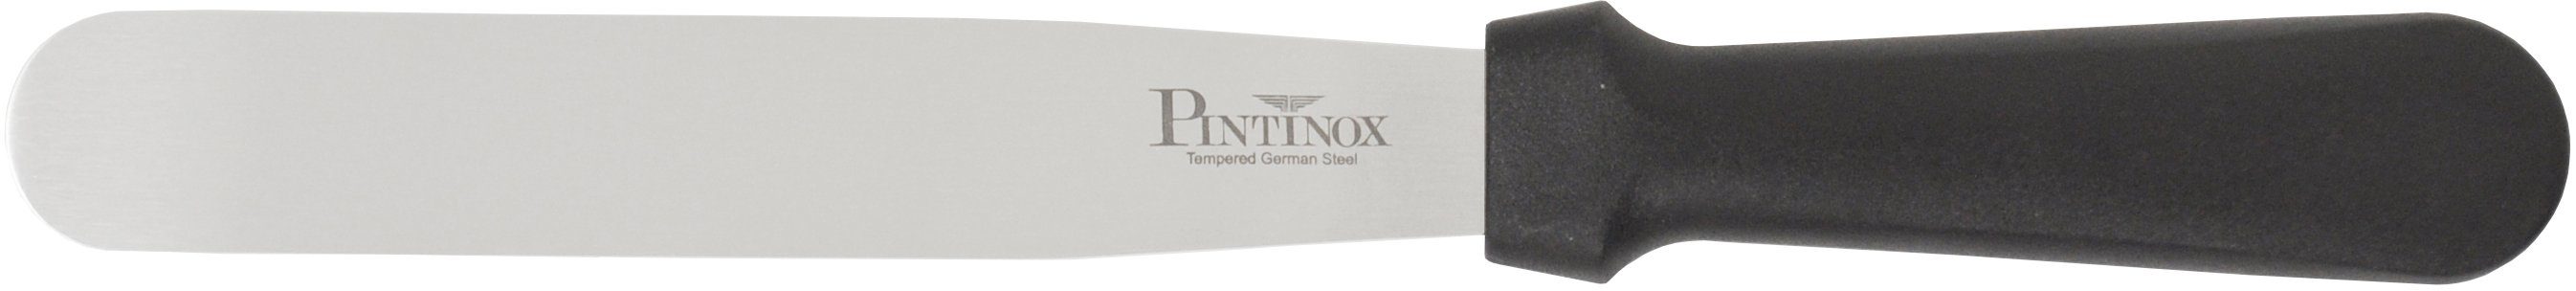 PINTINOX Streichpalette Professional, Edelstahl, spülmaschinengeeinget, cm 1 10,5cm, Spatel 15,9 Spatel 1